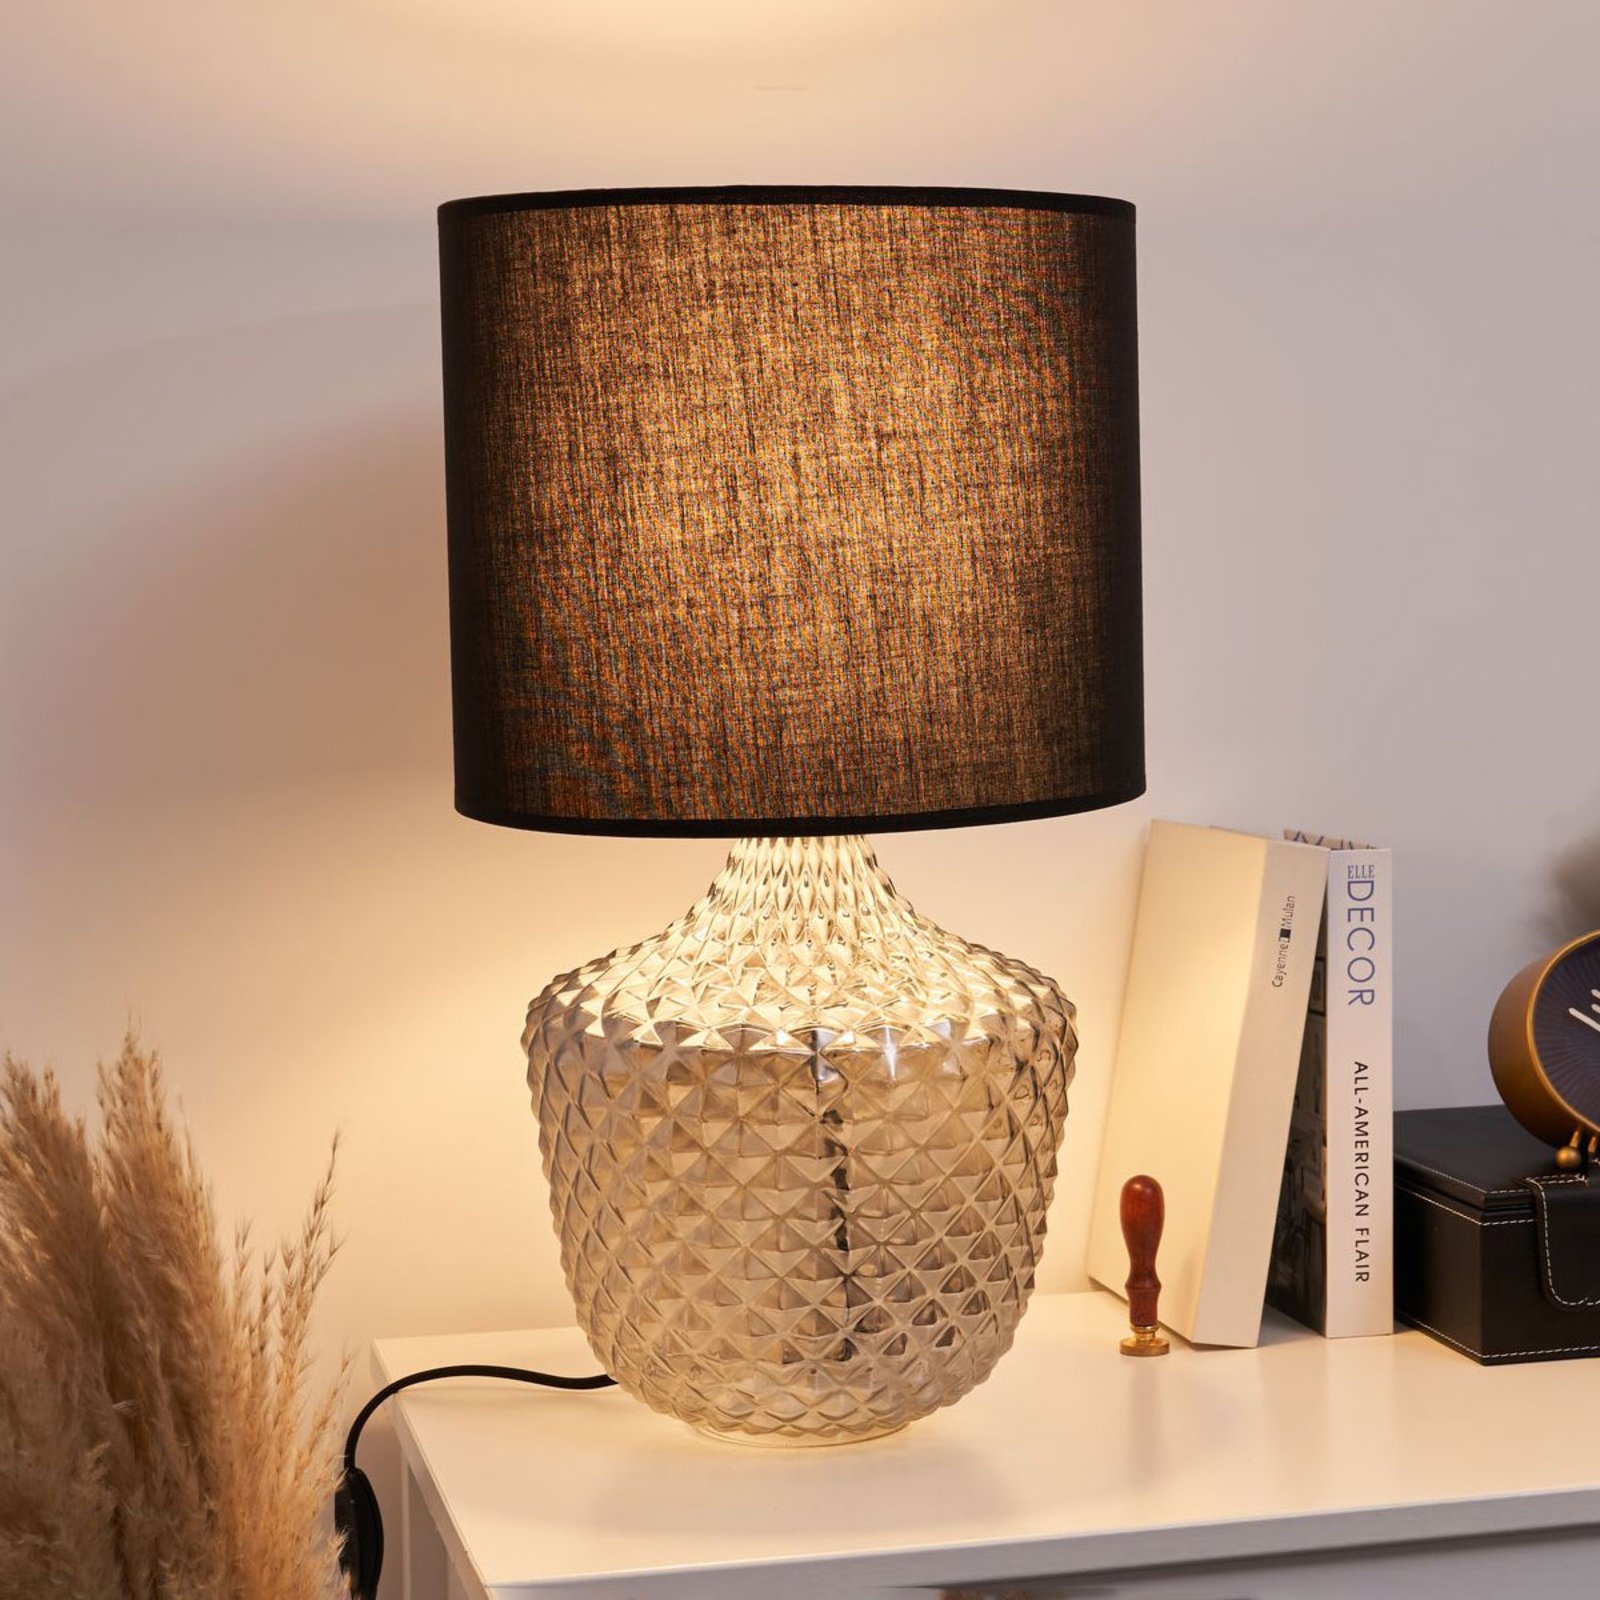 Occlusie Absoluut Mooi Pauleen Brilliant Jewel tafellamp met glazen voet | Lampen24.be